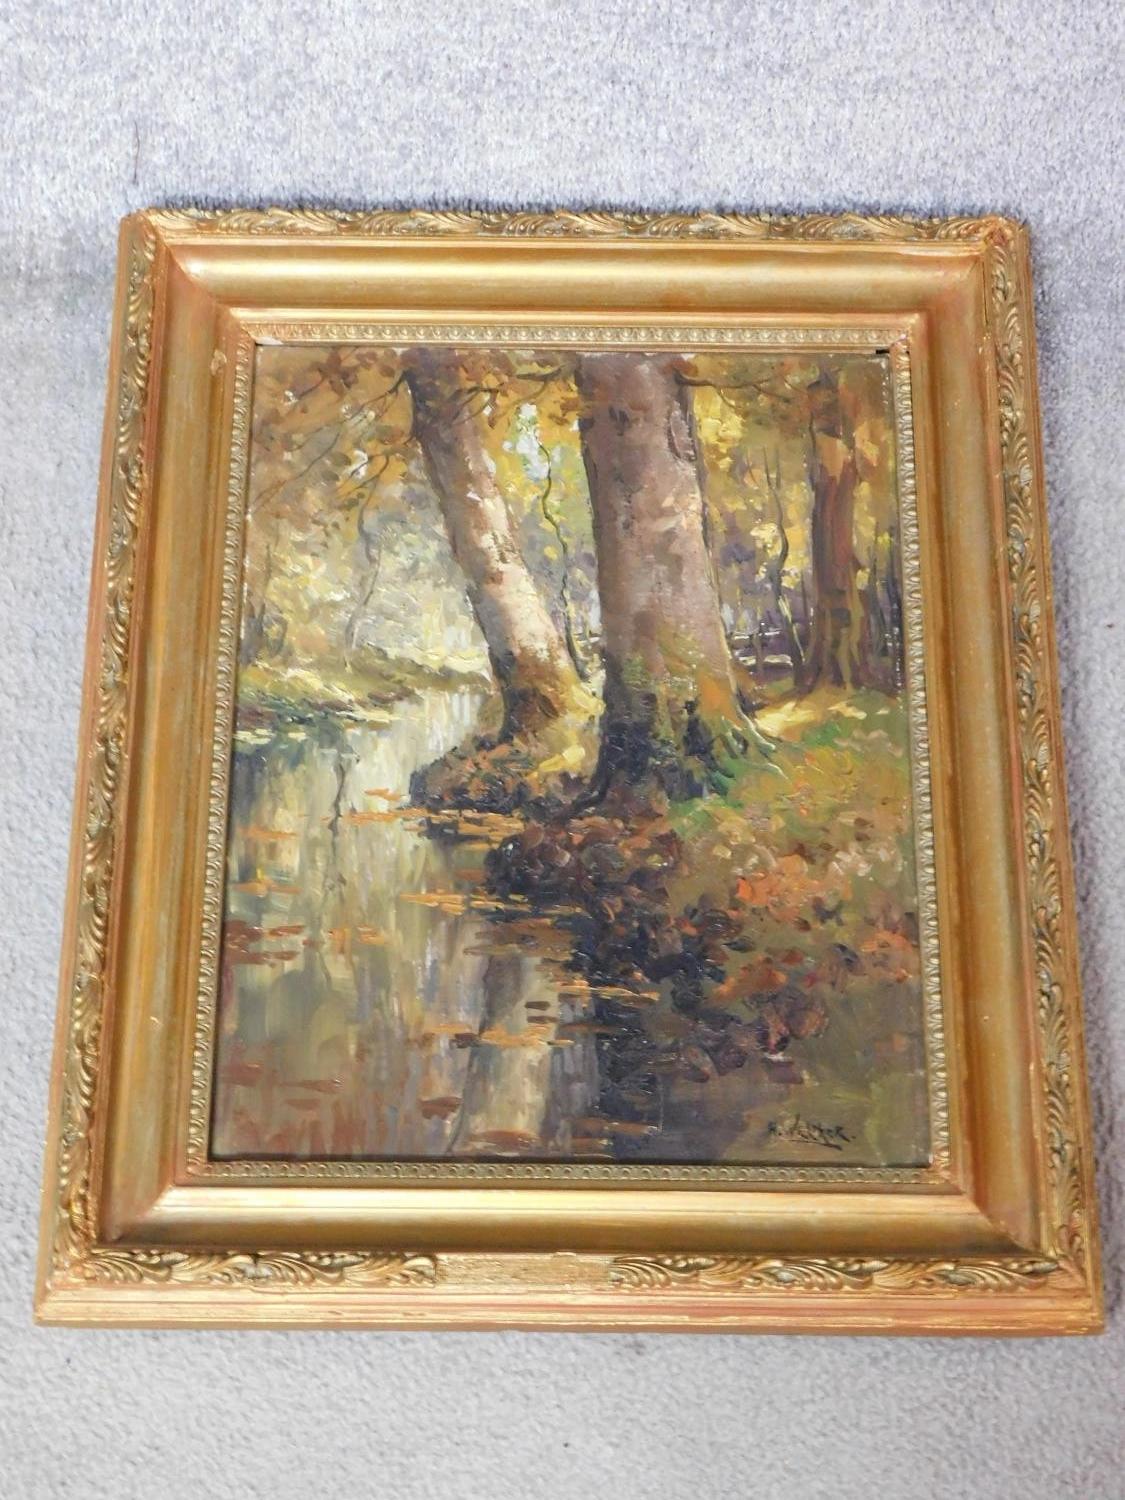 A gilt carved framed oil on canvas depicting a river in a forest. Jan Knikker signed alias Henk